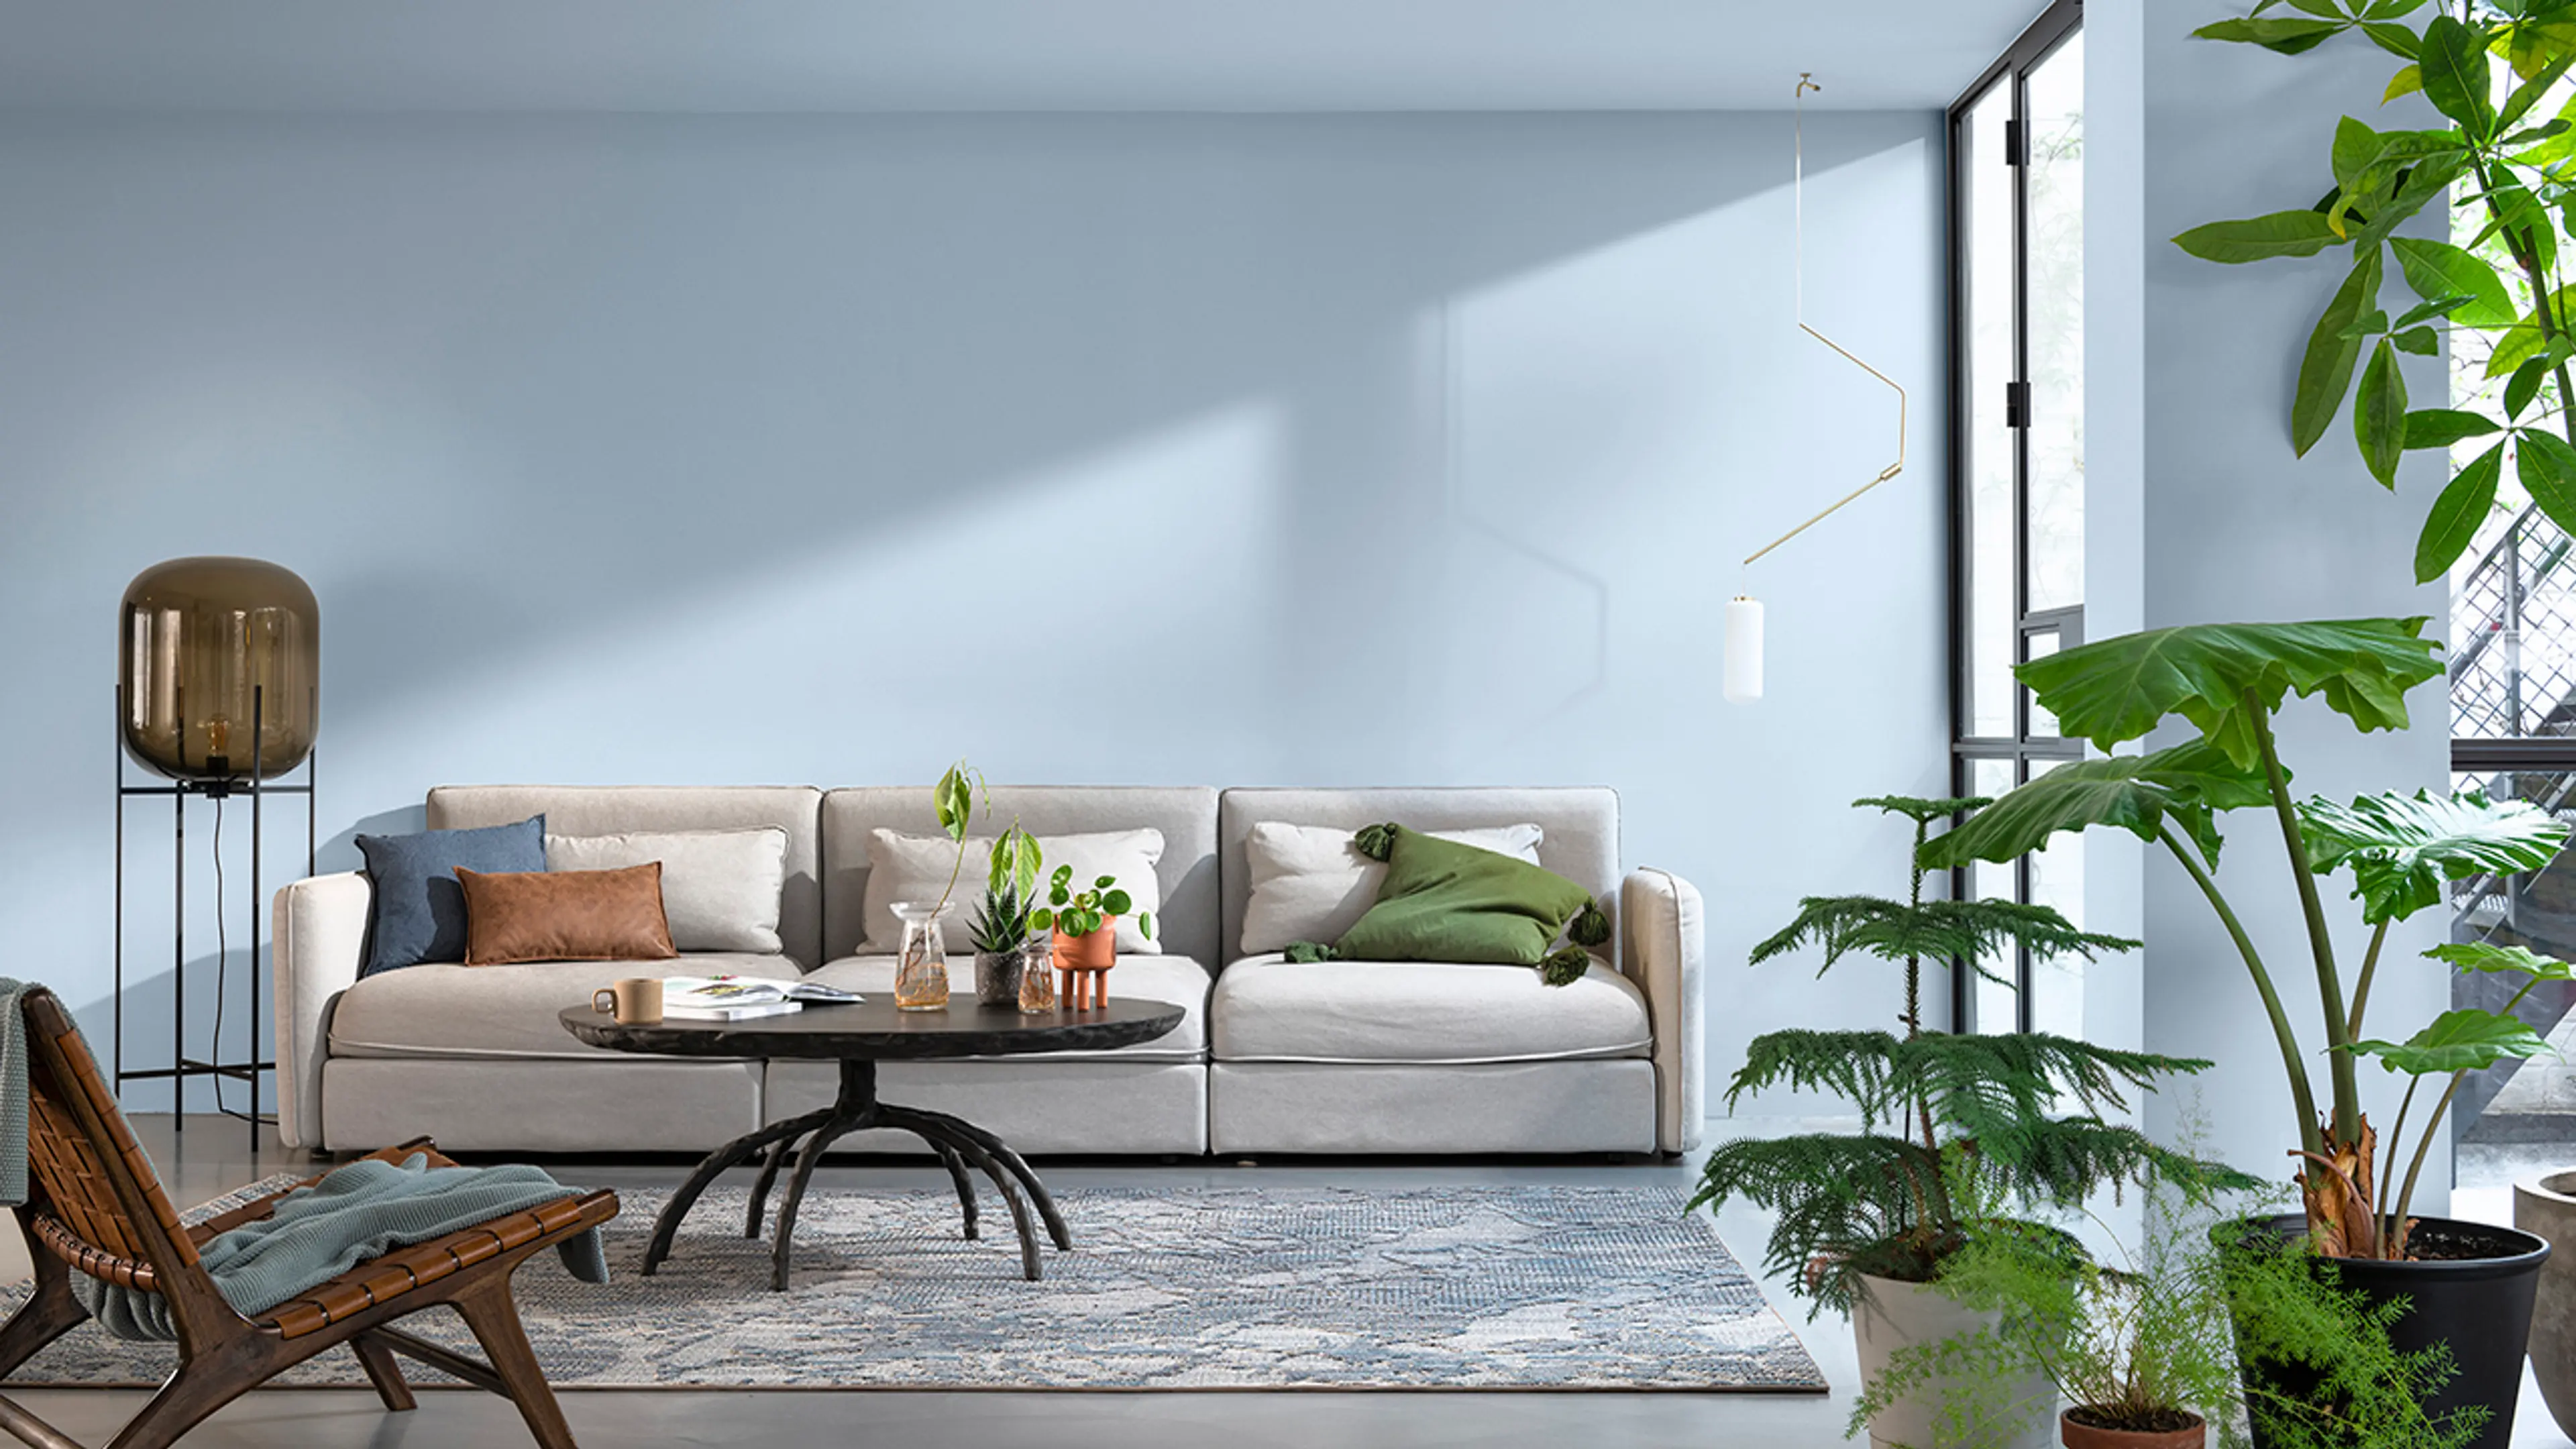 Stue med sofa og grønne planter hvor både vegger og tak er malt i samme lyseblå farge.